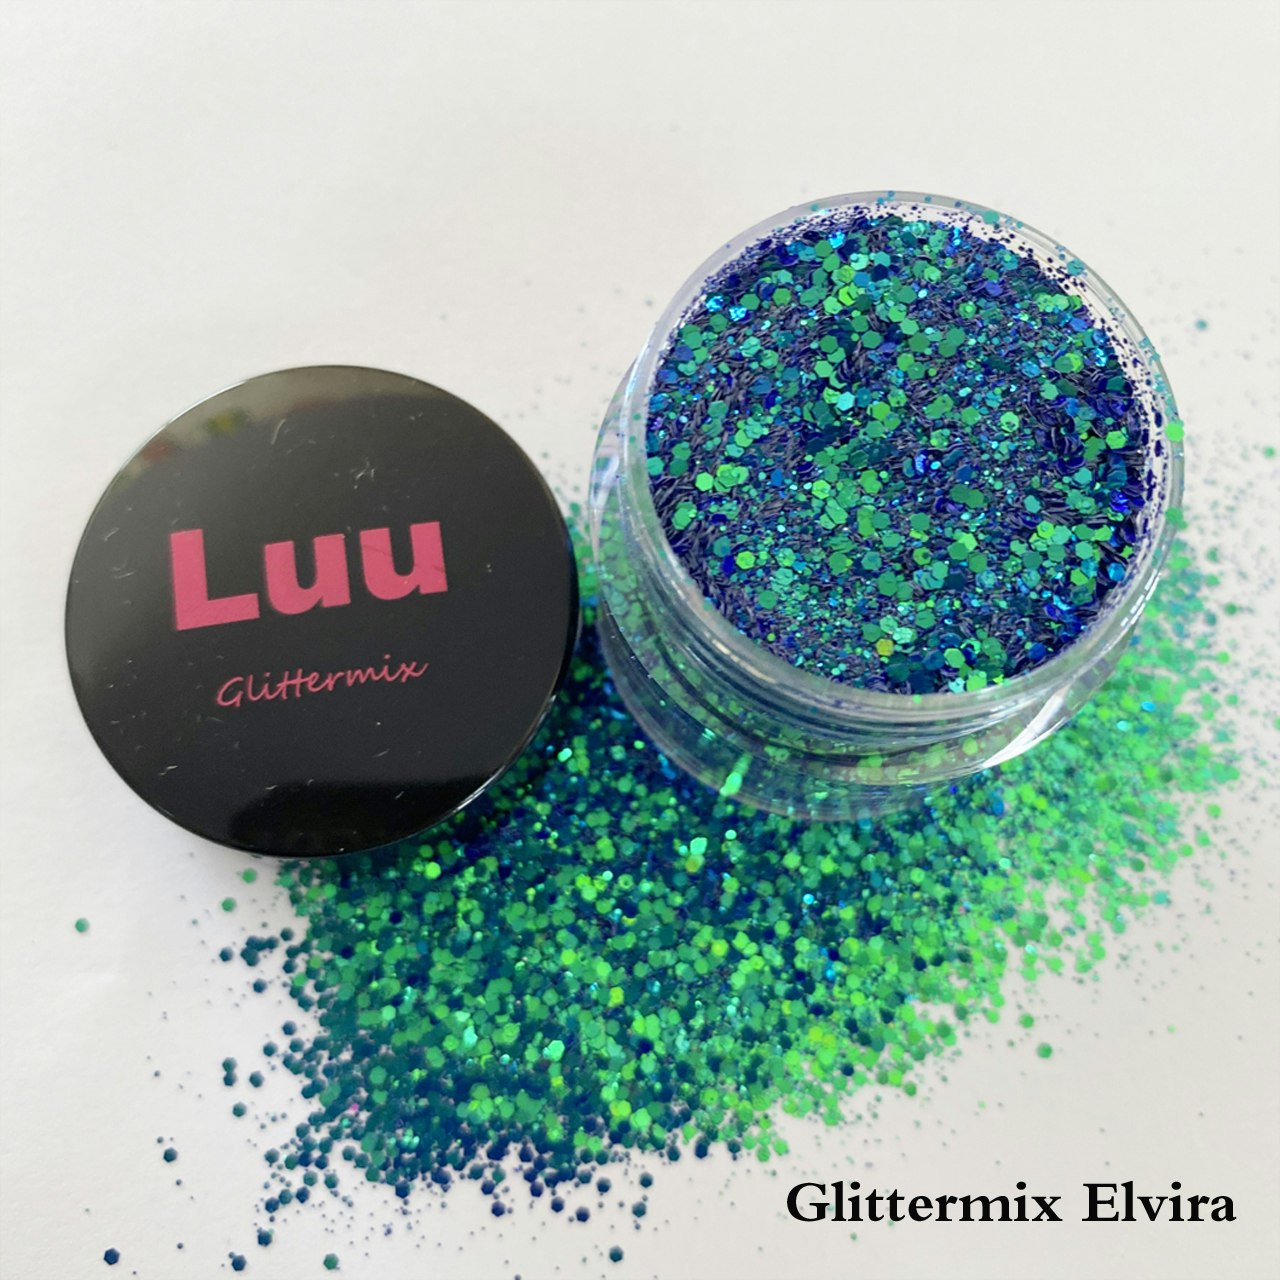 Elvira glittermix 15g